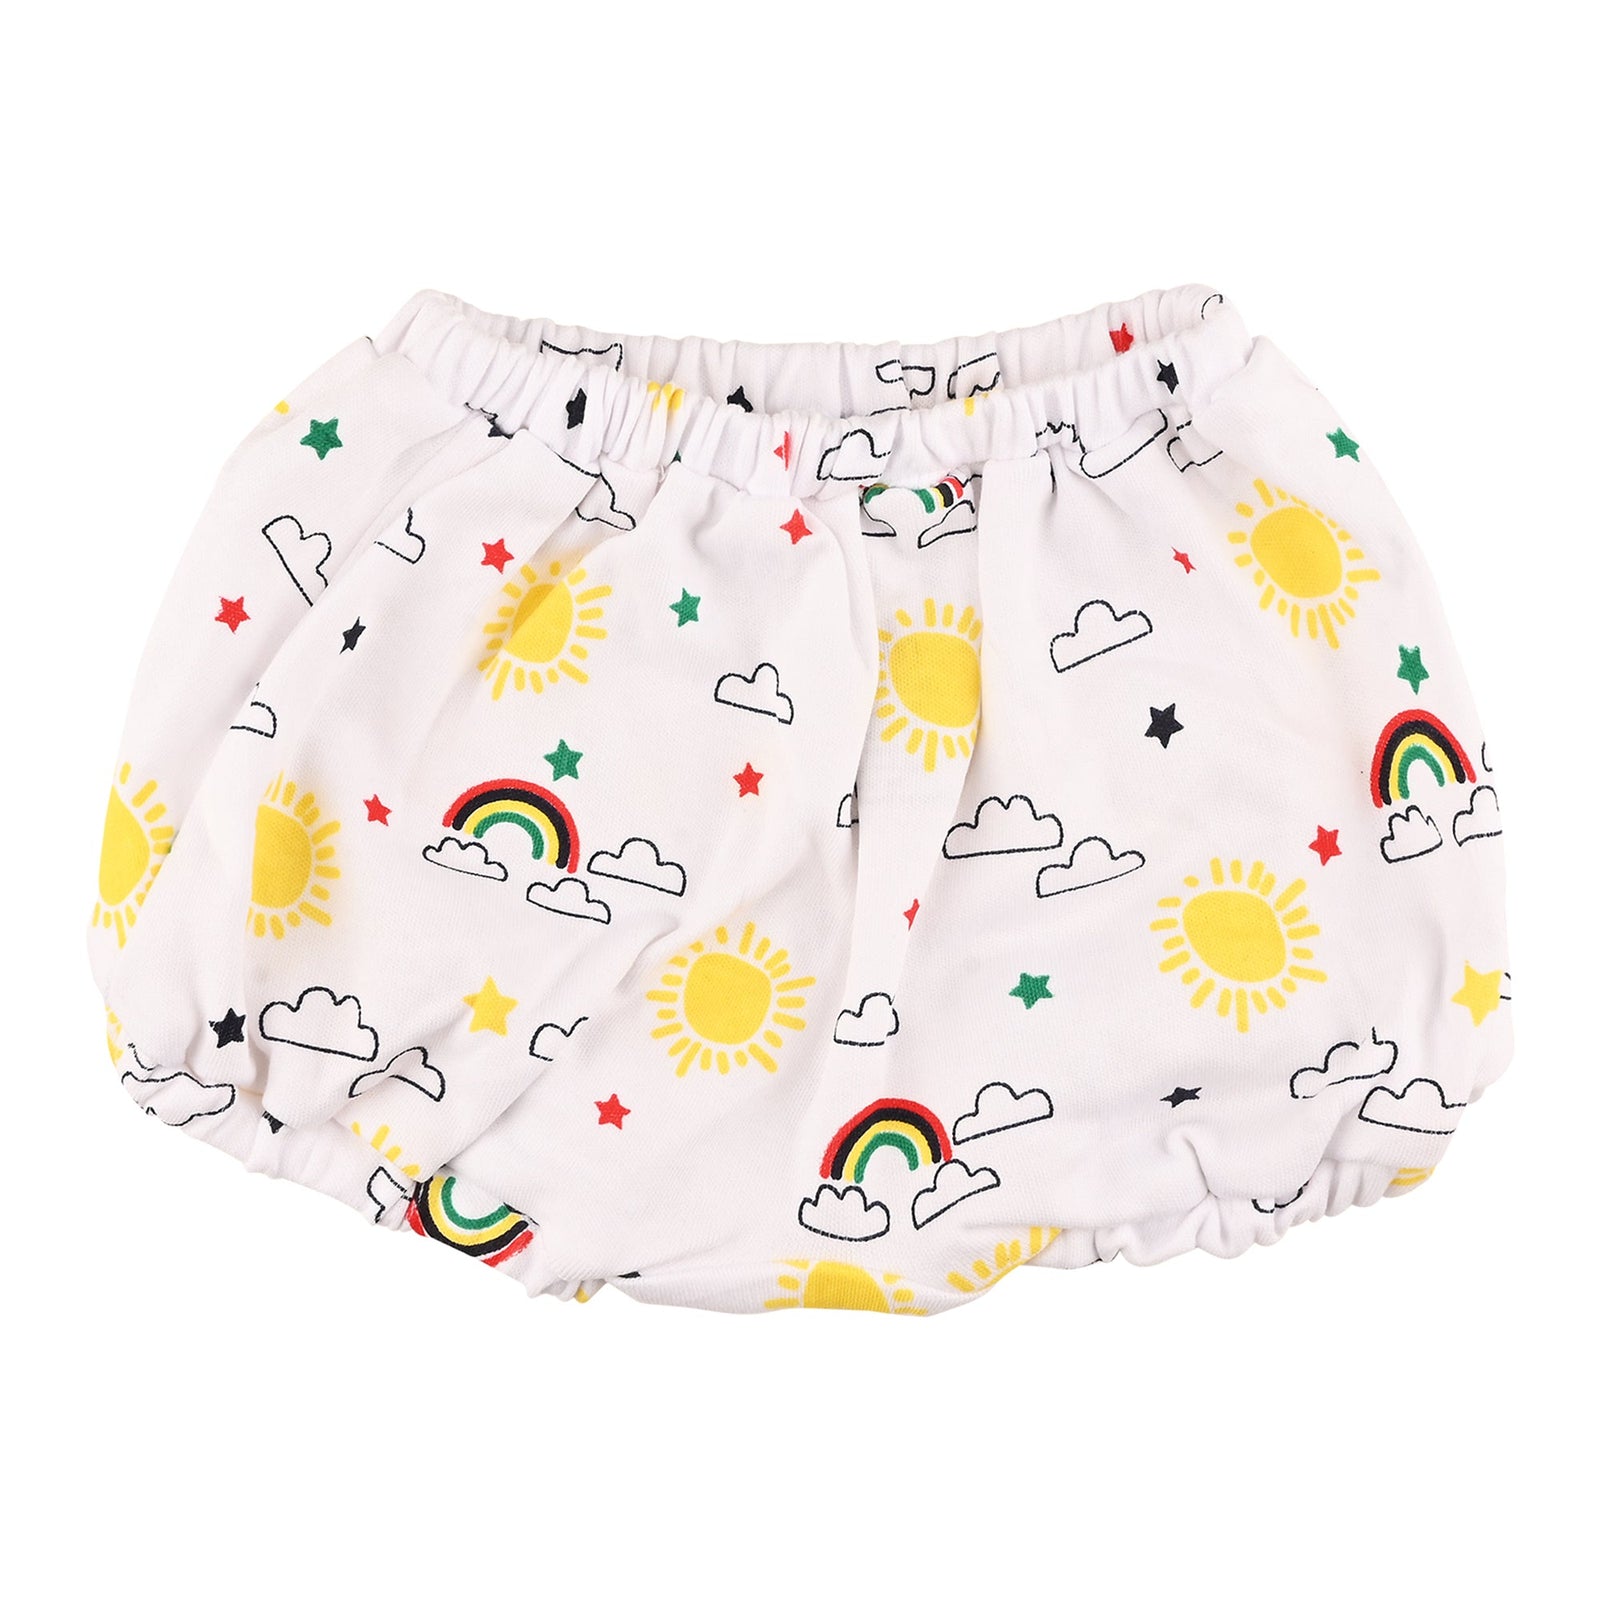 Buy Nuluv Girls Cotton Printed Panties Underwear Innerwear Multicolor (pack  Of 5) online